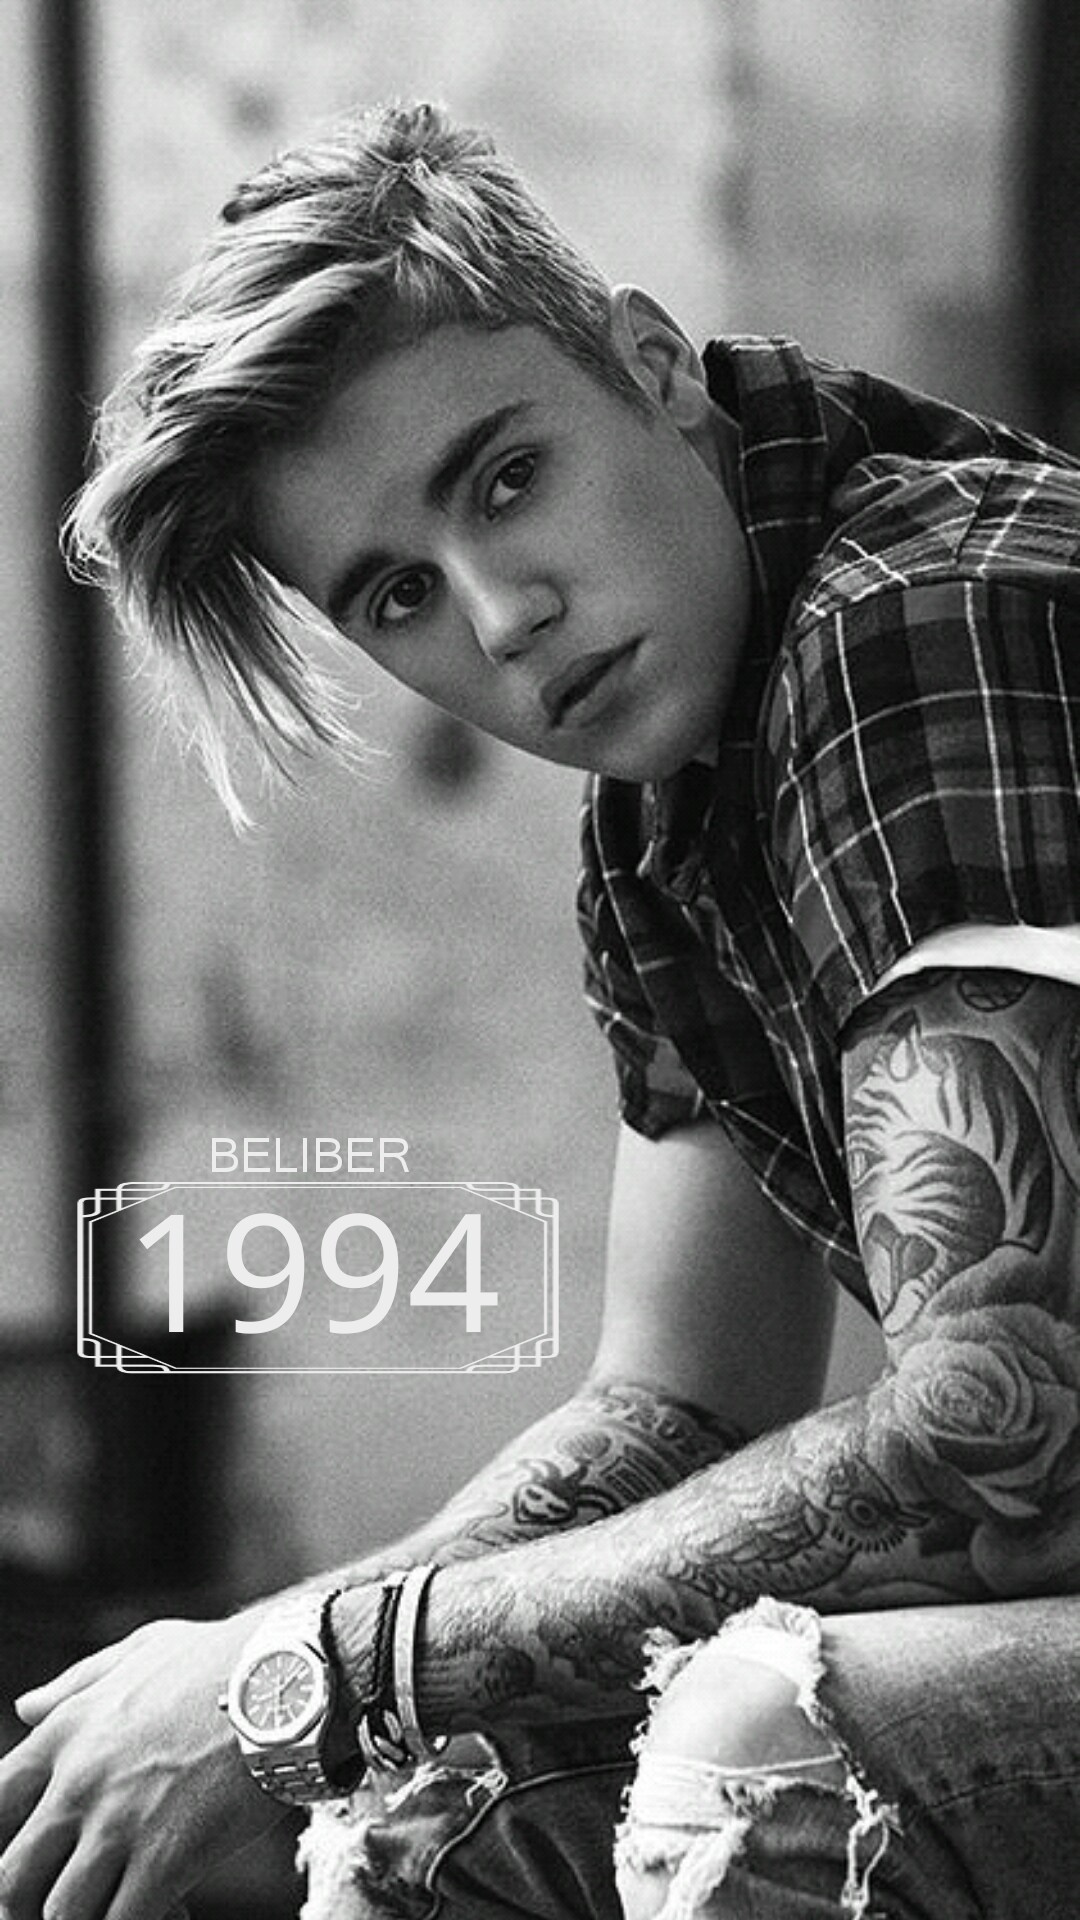 Justin Bieber Wallpapers Data-src /w/full/f/7/c/472211 - Justin Bieber  Wallpaper Hd - 1080x1920 Wallpaper 